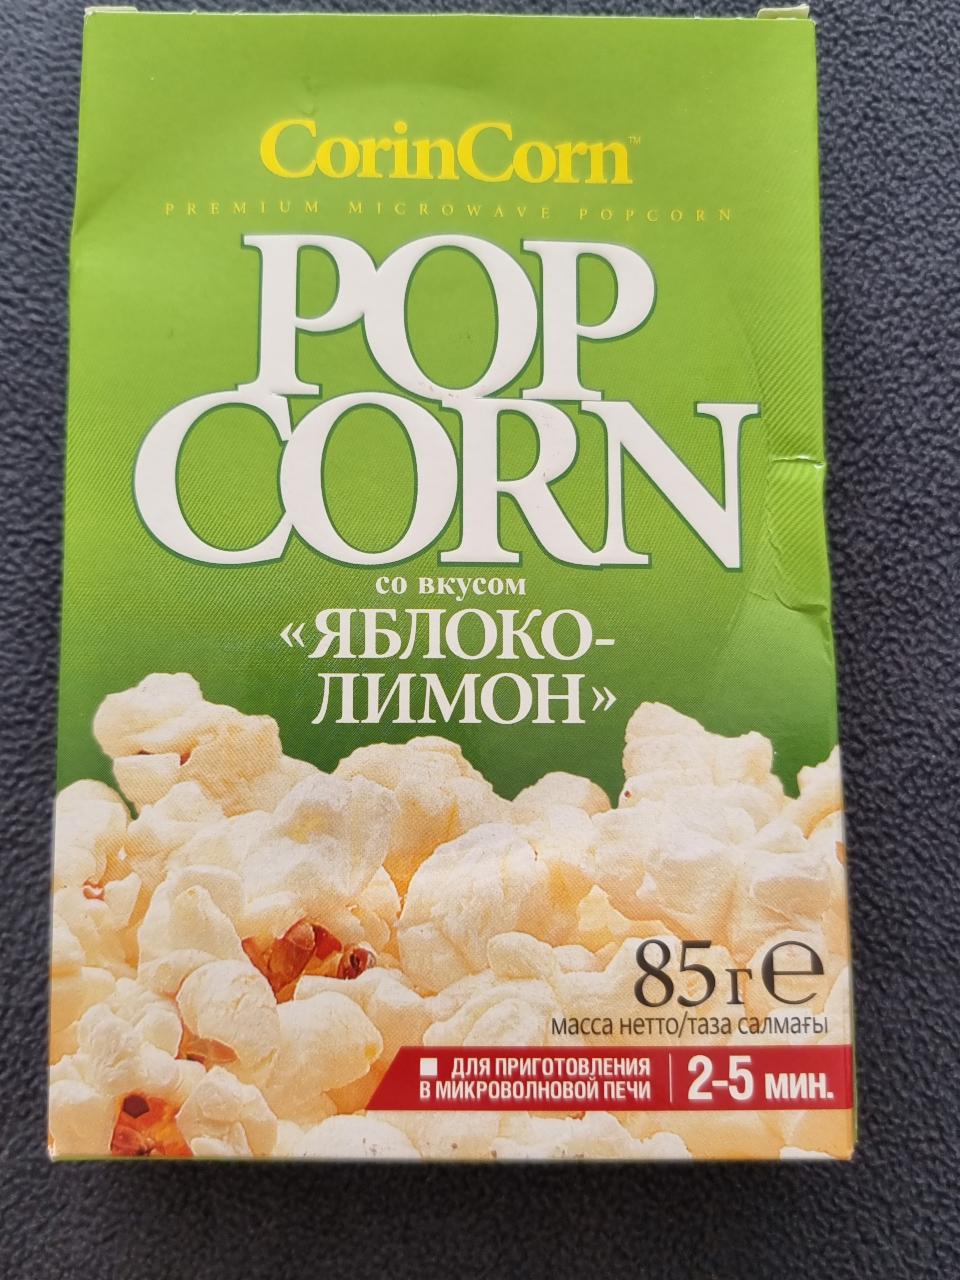 Фото - Попкорн Pop Corn Яблоко - Лимон CorinCorn